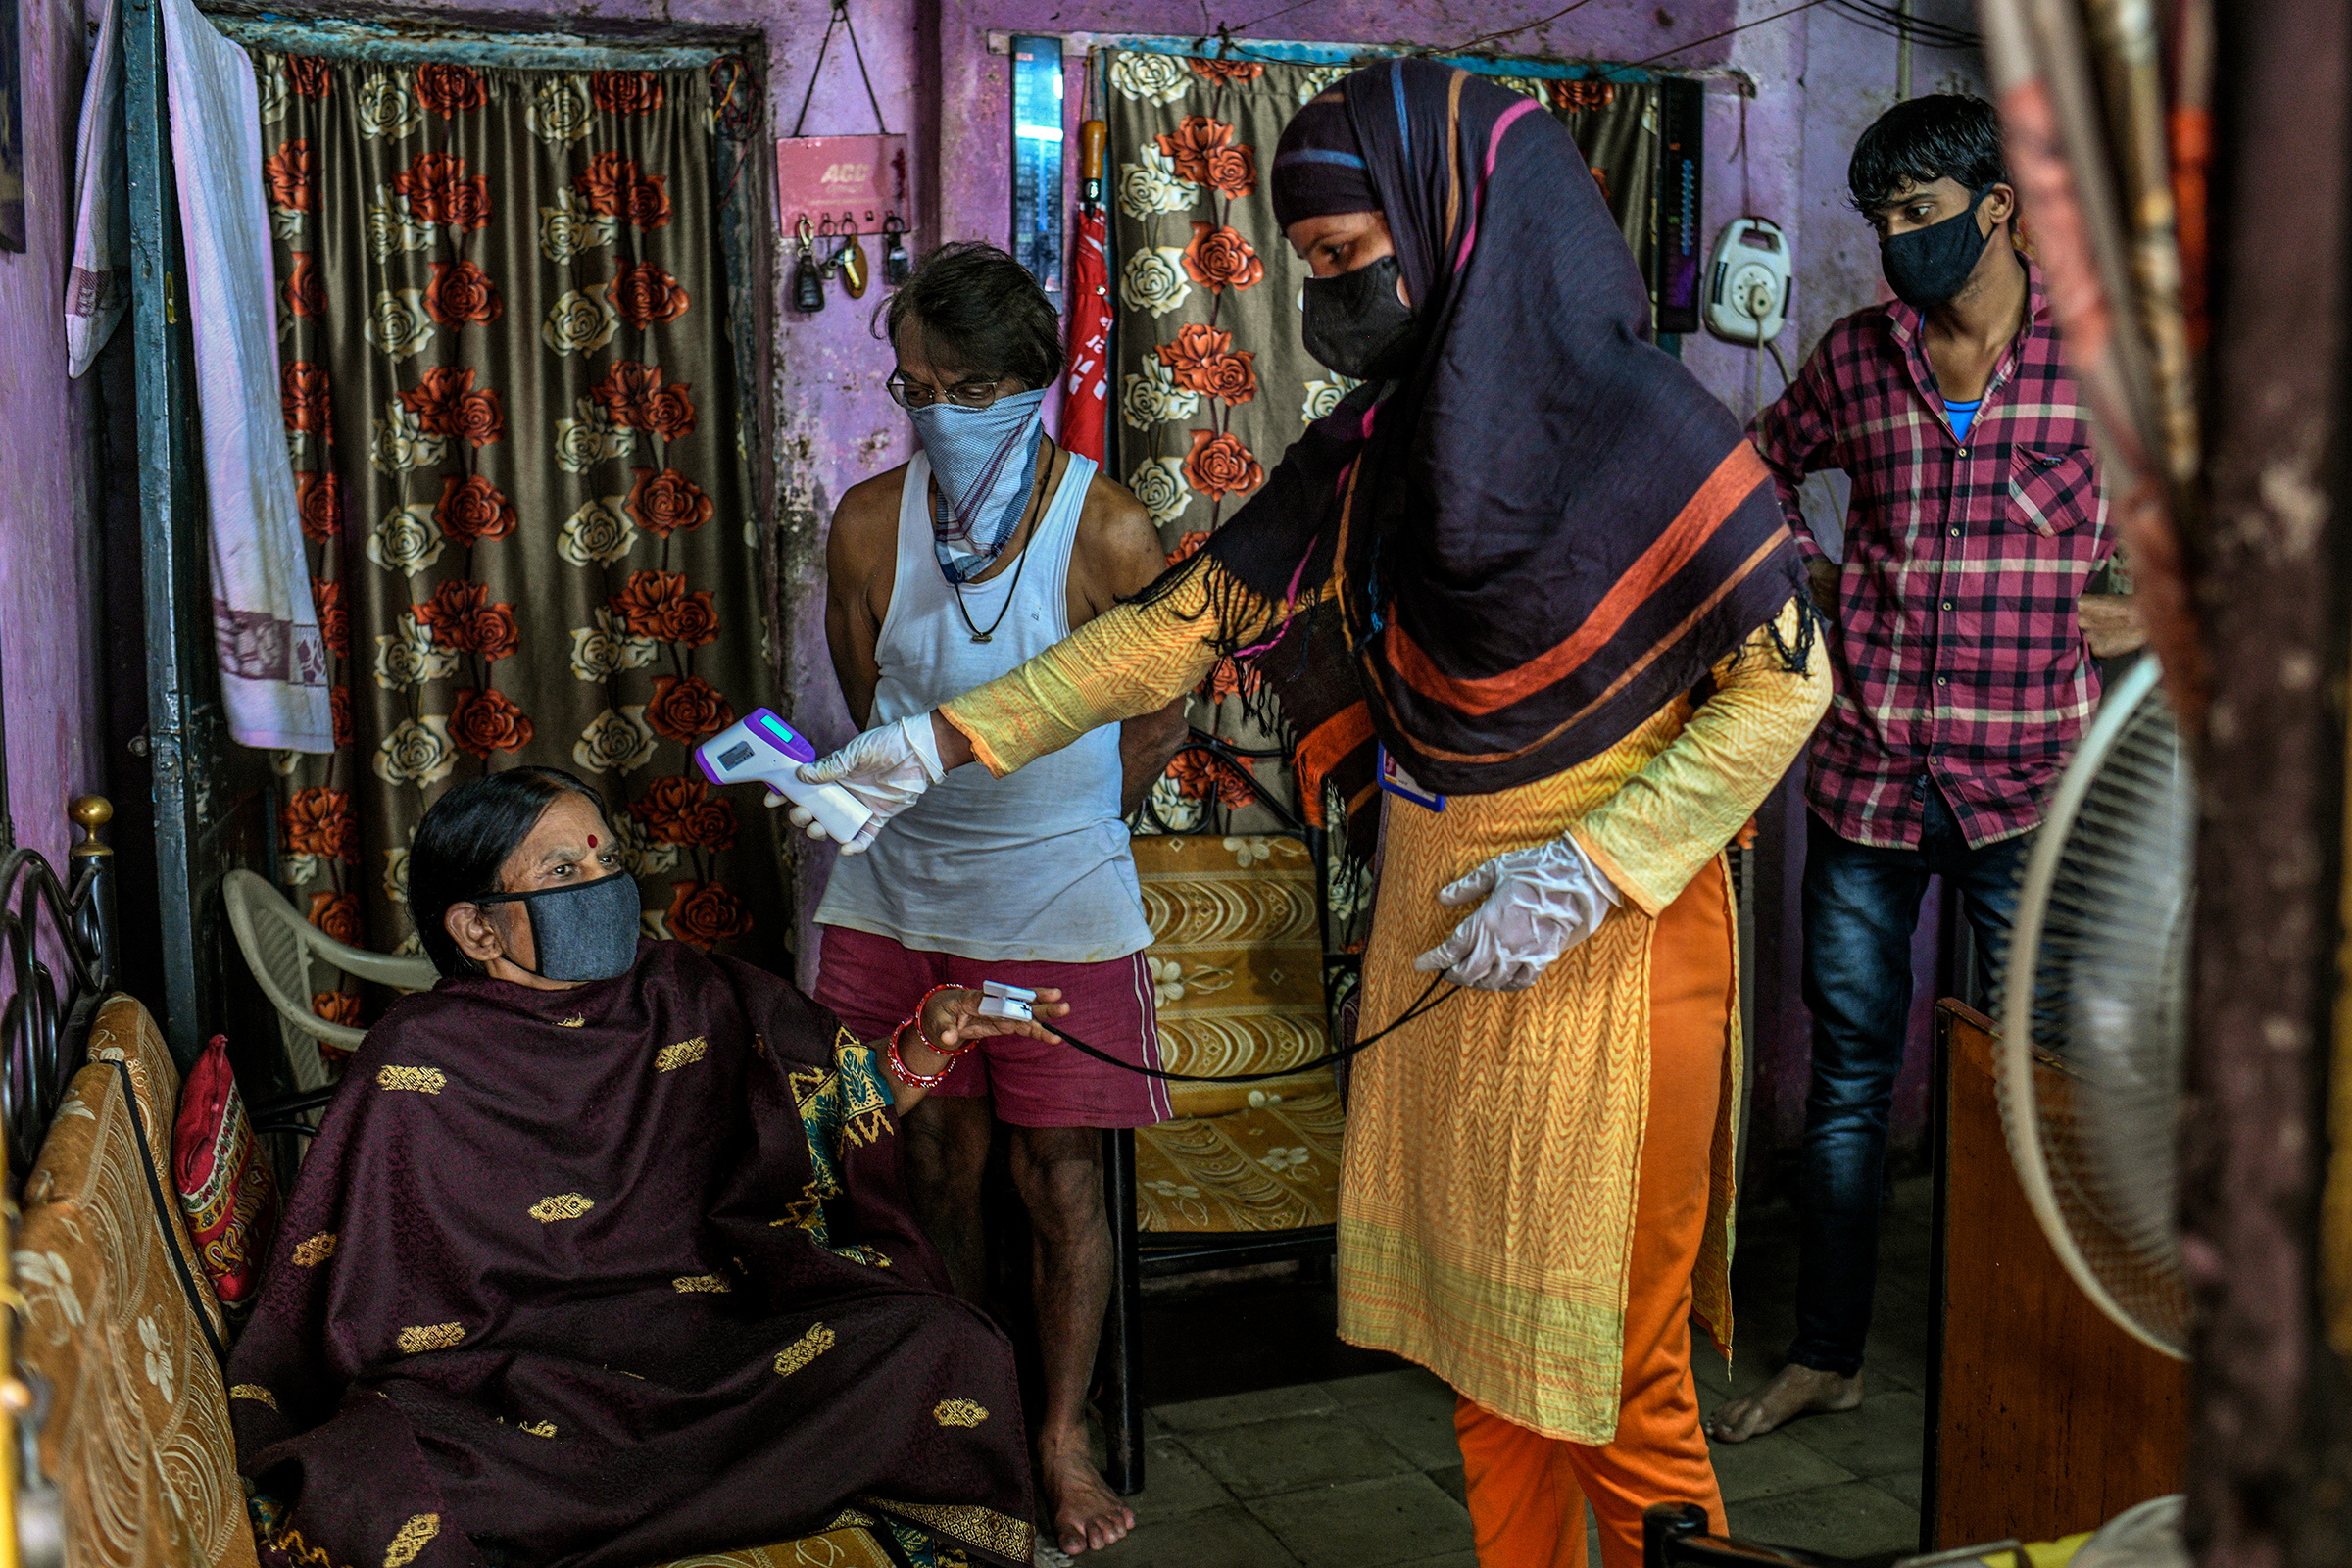 Un trabajador de la salud controla la temperatura y los niveles de oxígeno de una mujer en el barrio pobre de Dhole Patil el 10 de agosto.